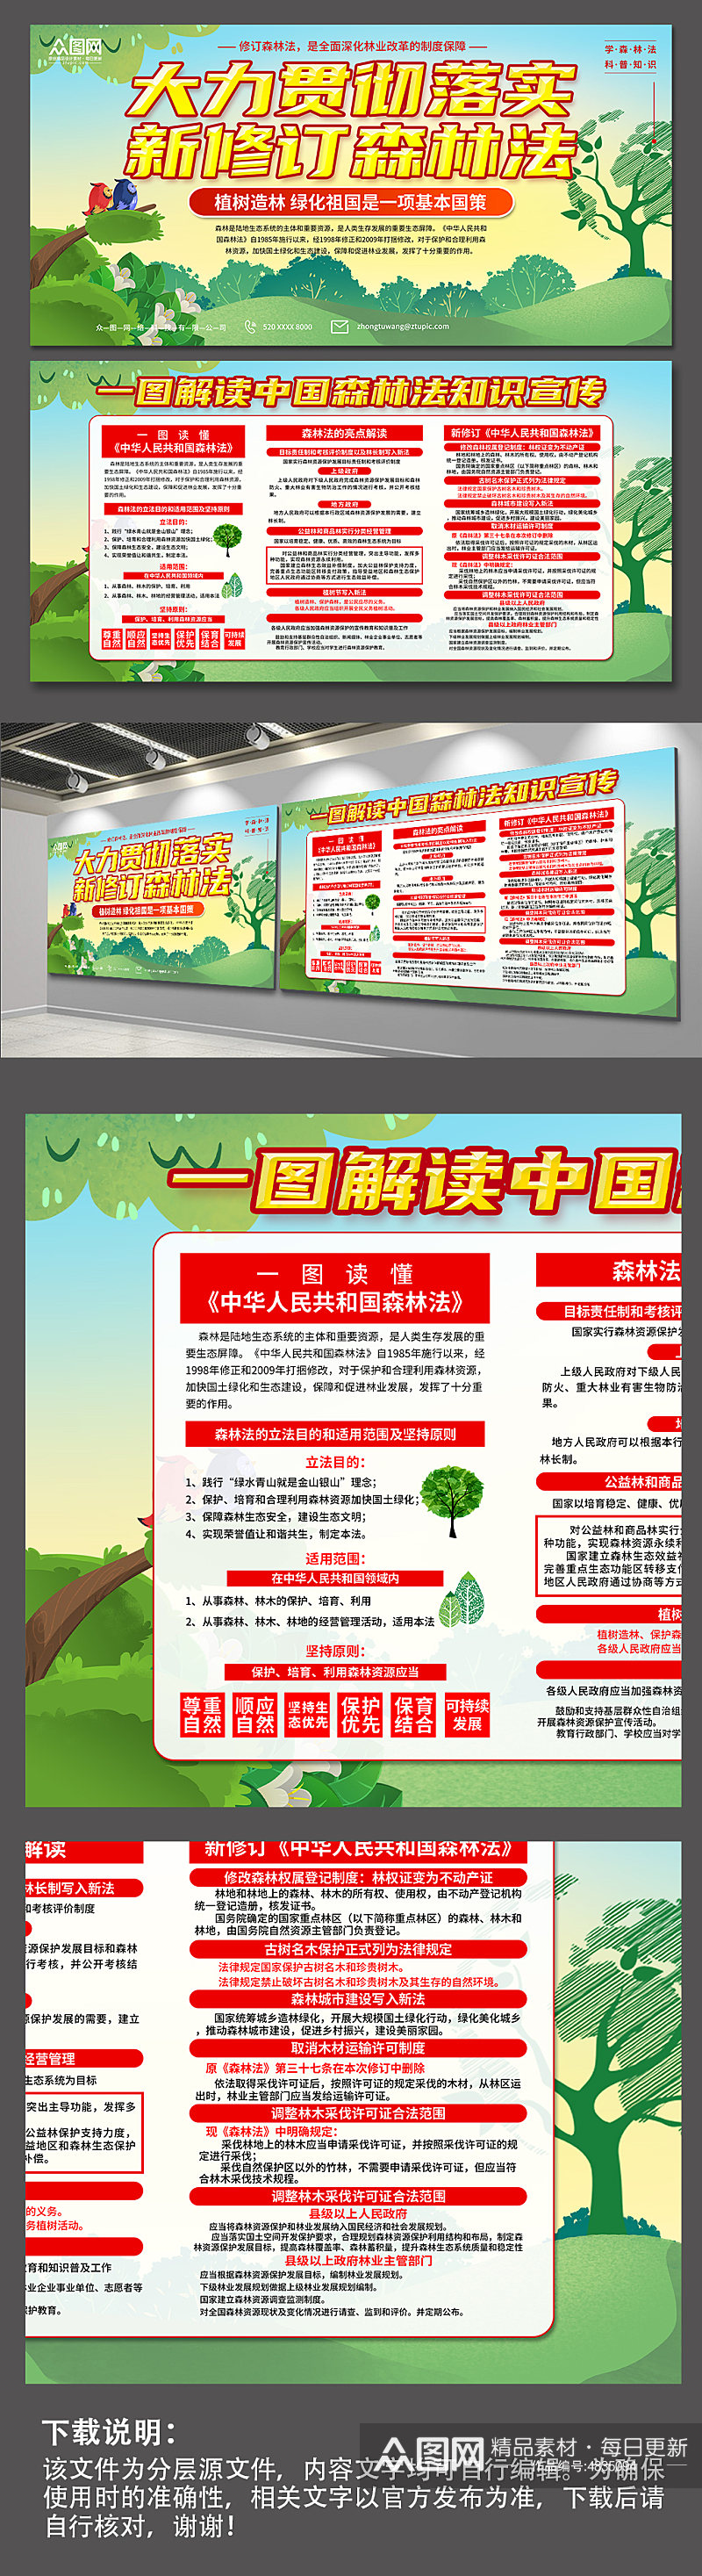 清新中国森林法知识宣传展板素材